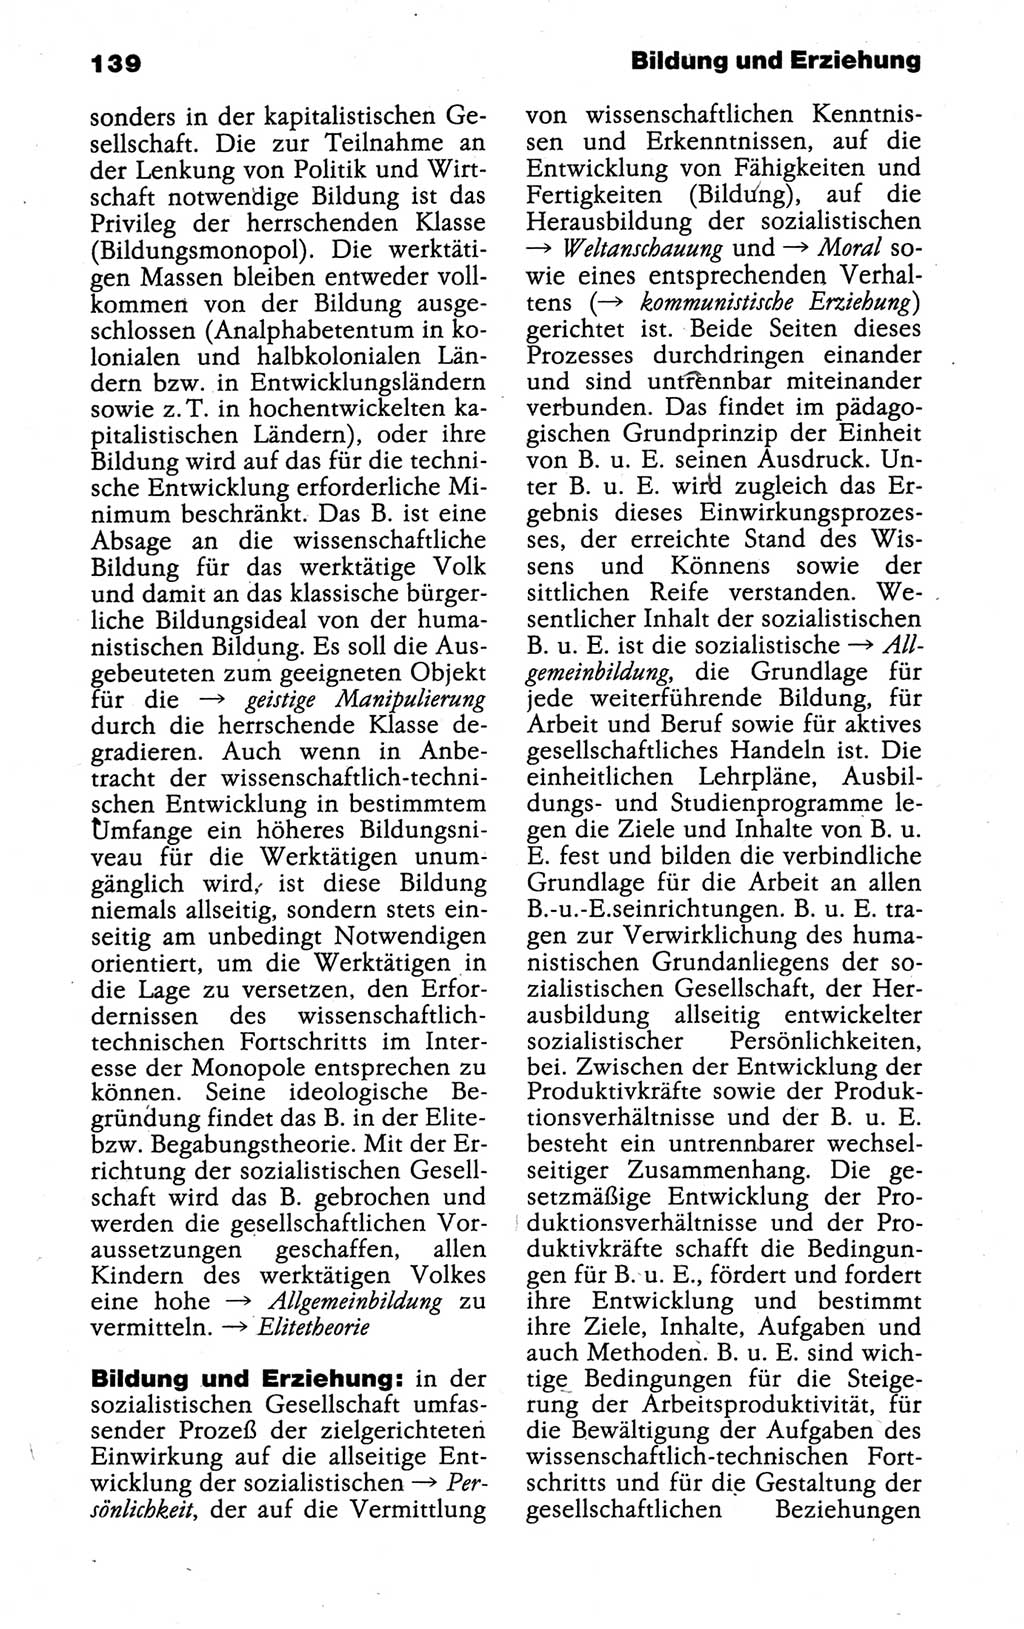 Kleines politisches Wörterbuch [Deutsche Demokratische Republik (DDR)] 1988, Seite 139 (Kl. pol. Wb. DDR 1988, S. 139)